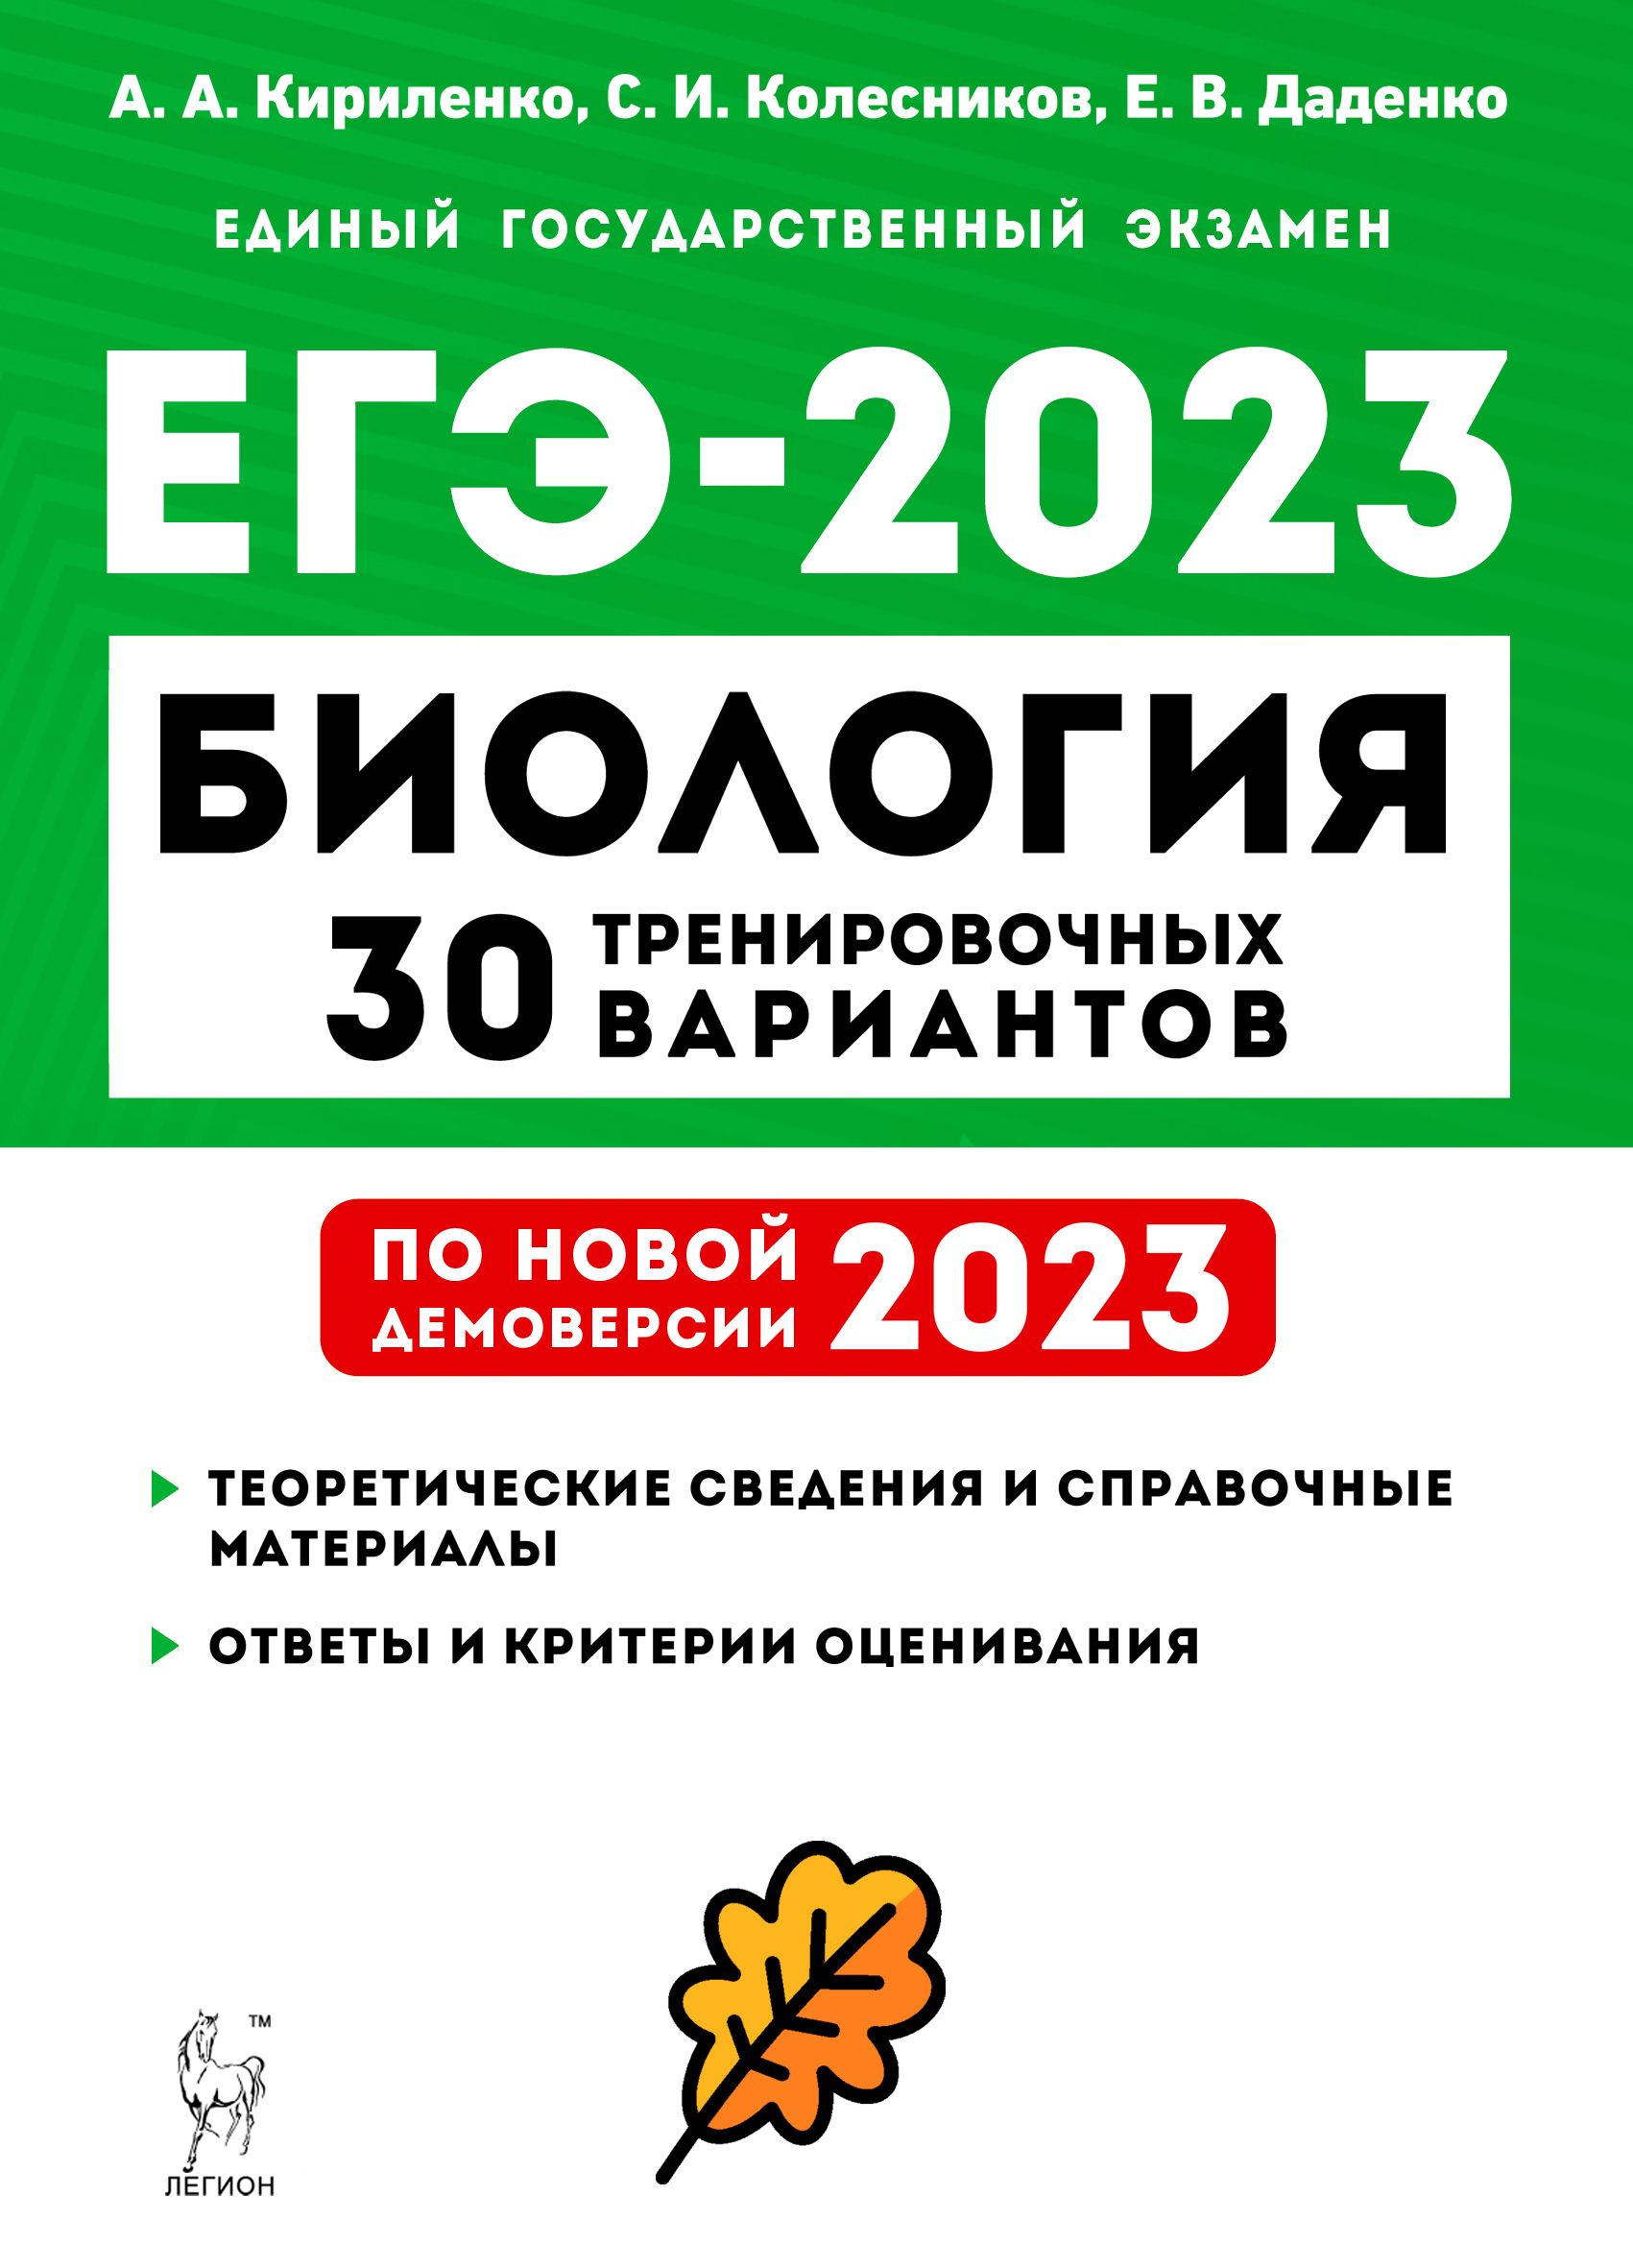 Биология. Подготовка к ЕГЭ-2023. 30 тренировочных вариантов по демоверсии 2023 года